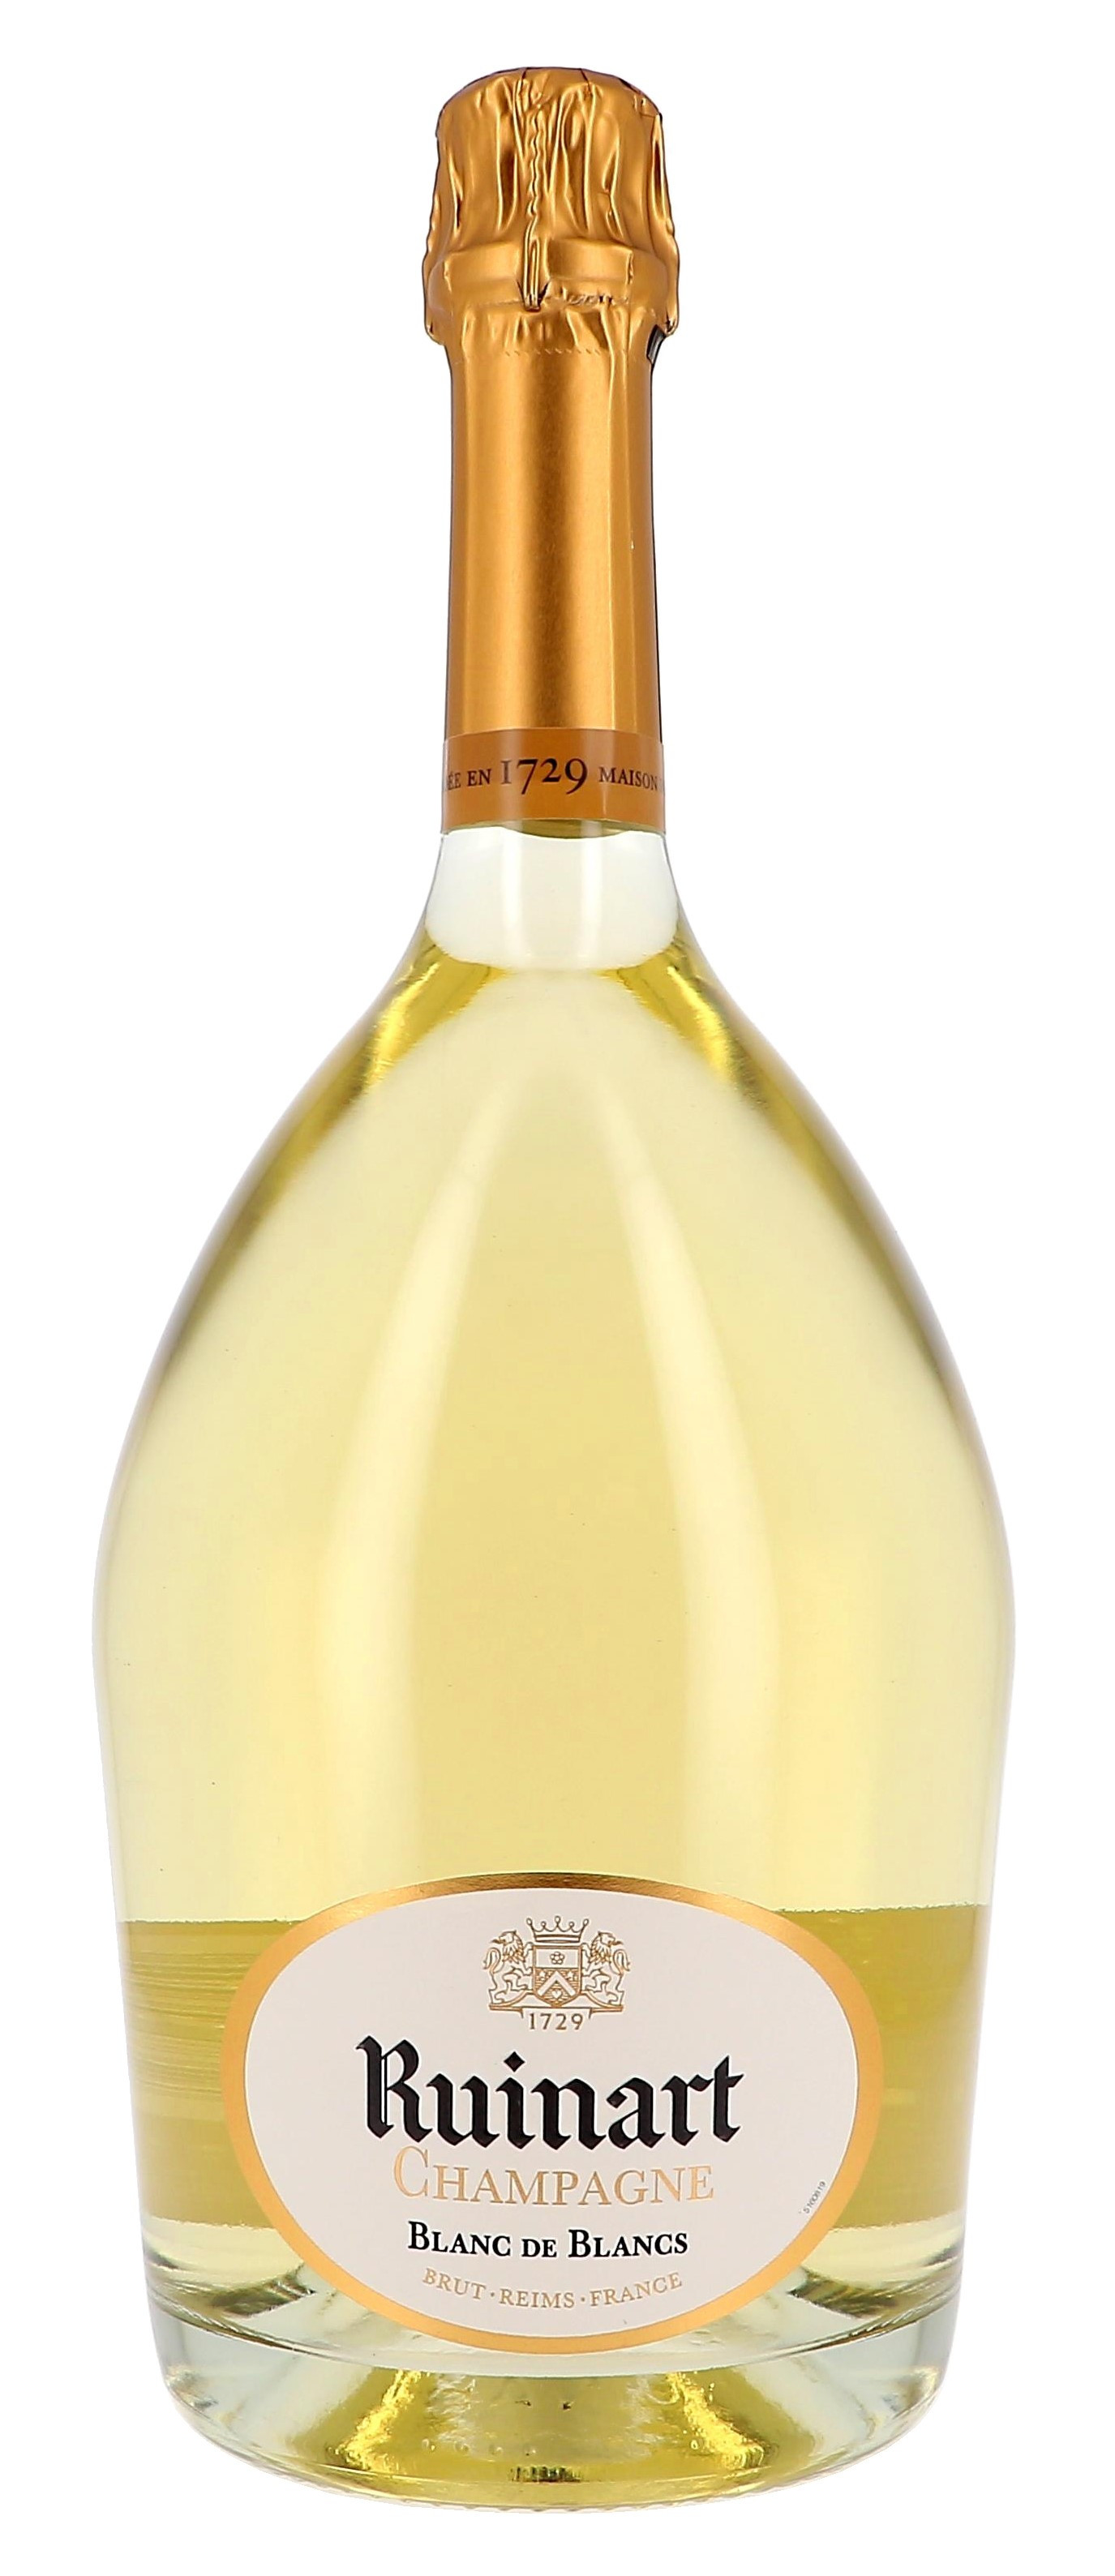 Ruinart Blanc de Blancs Champagne Vins Mousseux 